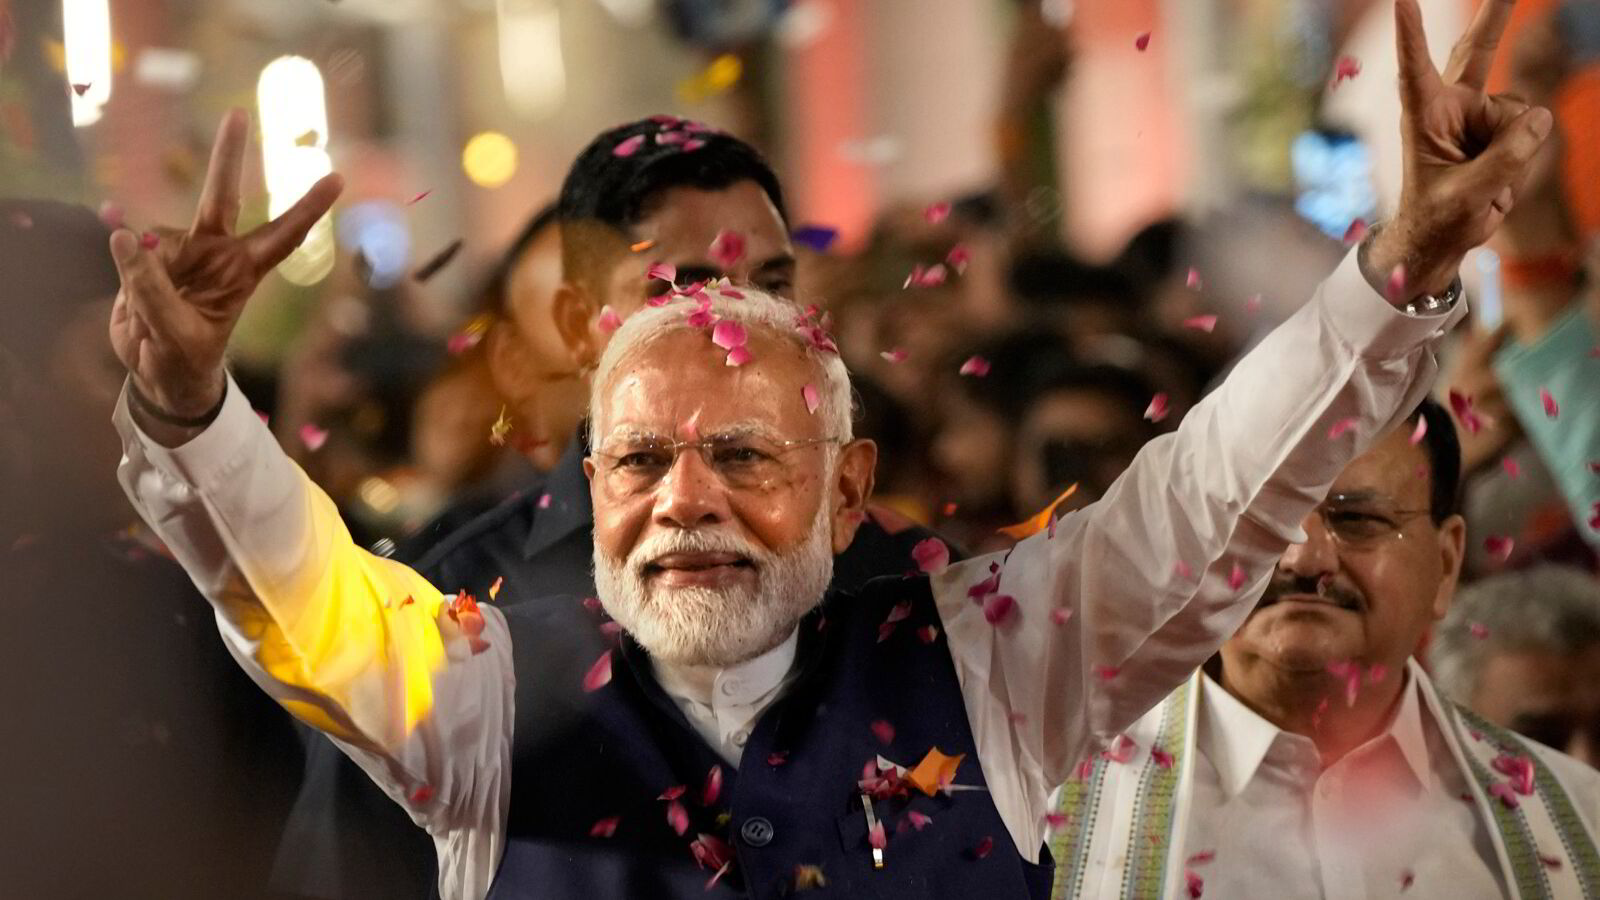 DNs helgequiz, uke 23: Hvilket parti representerer Indias statsminister?